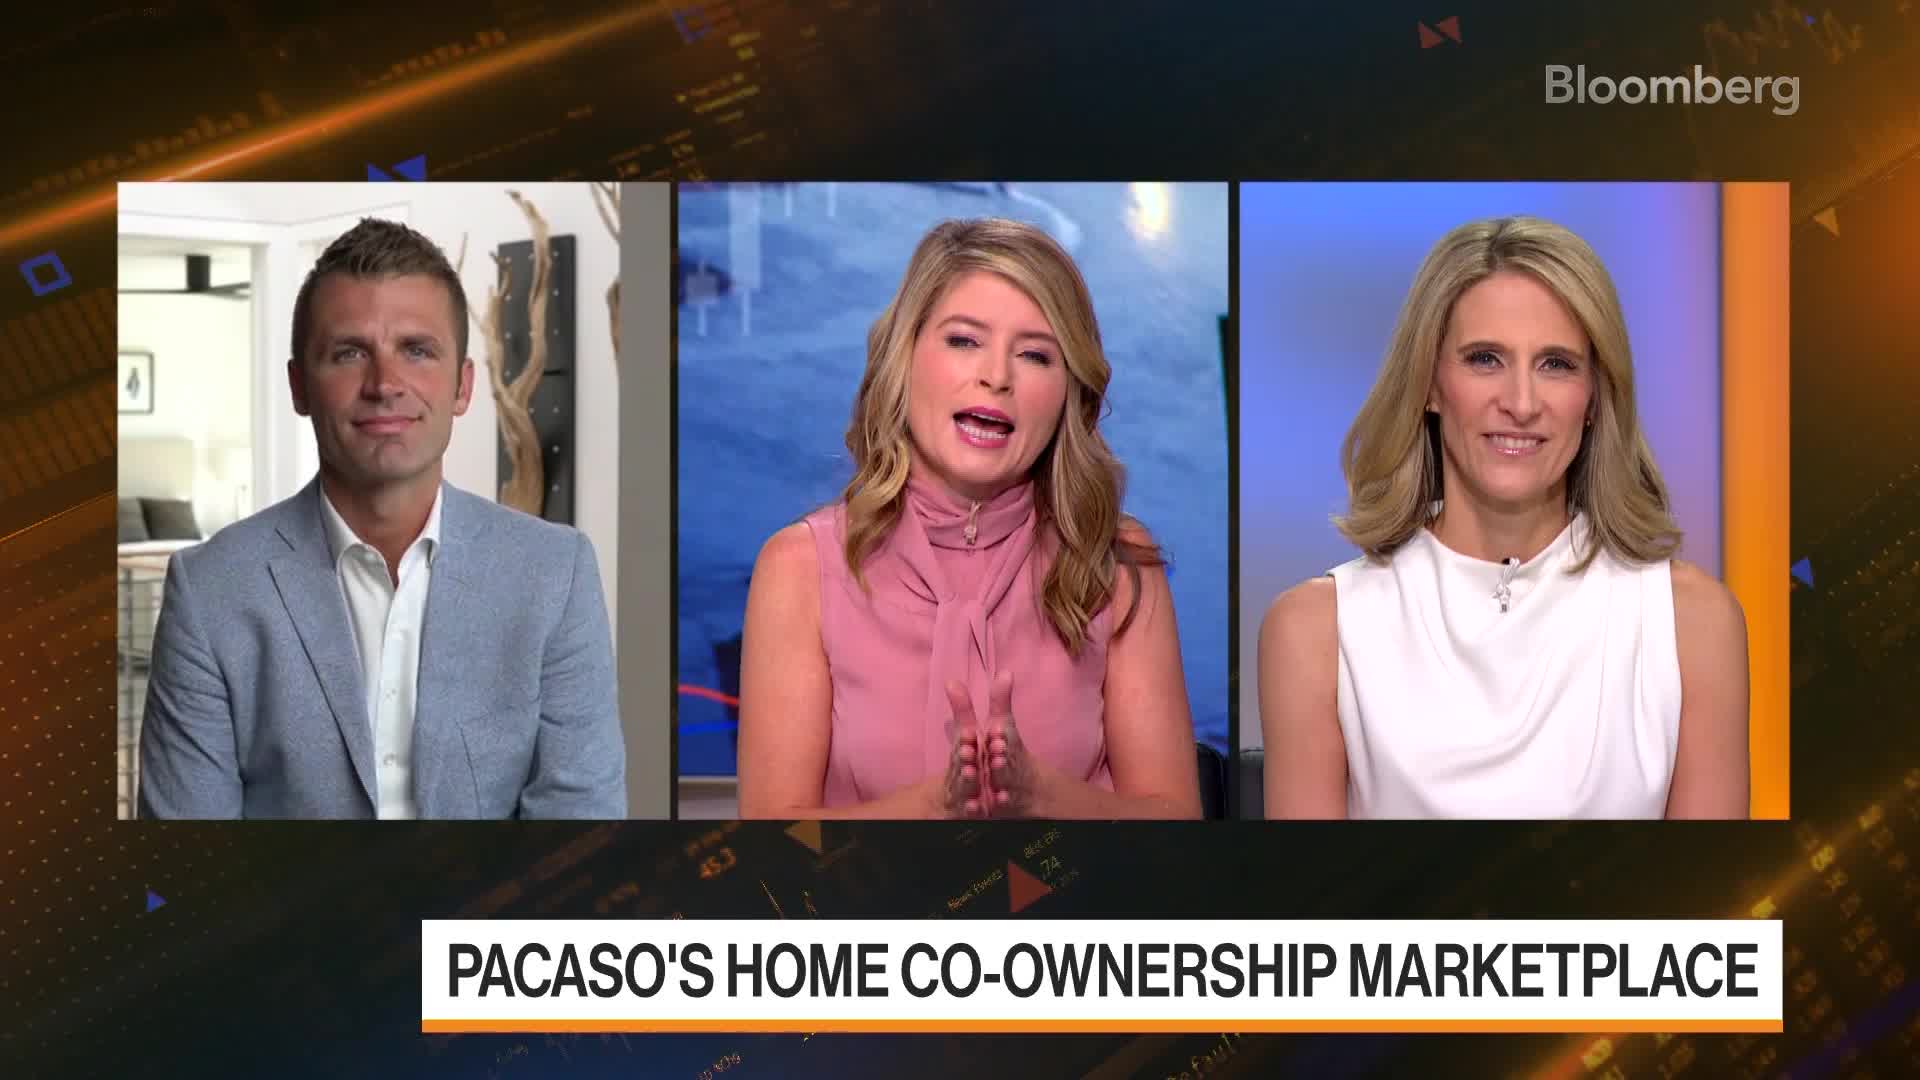 PacasoのCEO、住宅共同所有マーケットプレイスについて語る